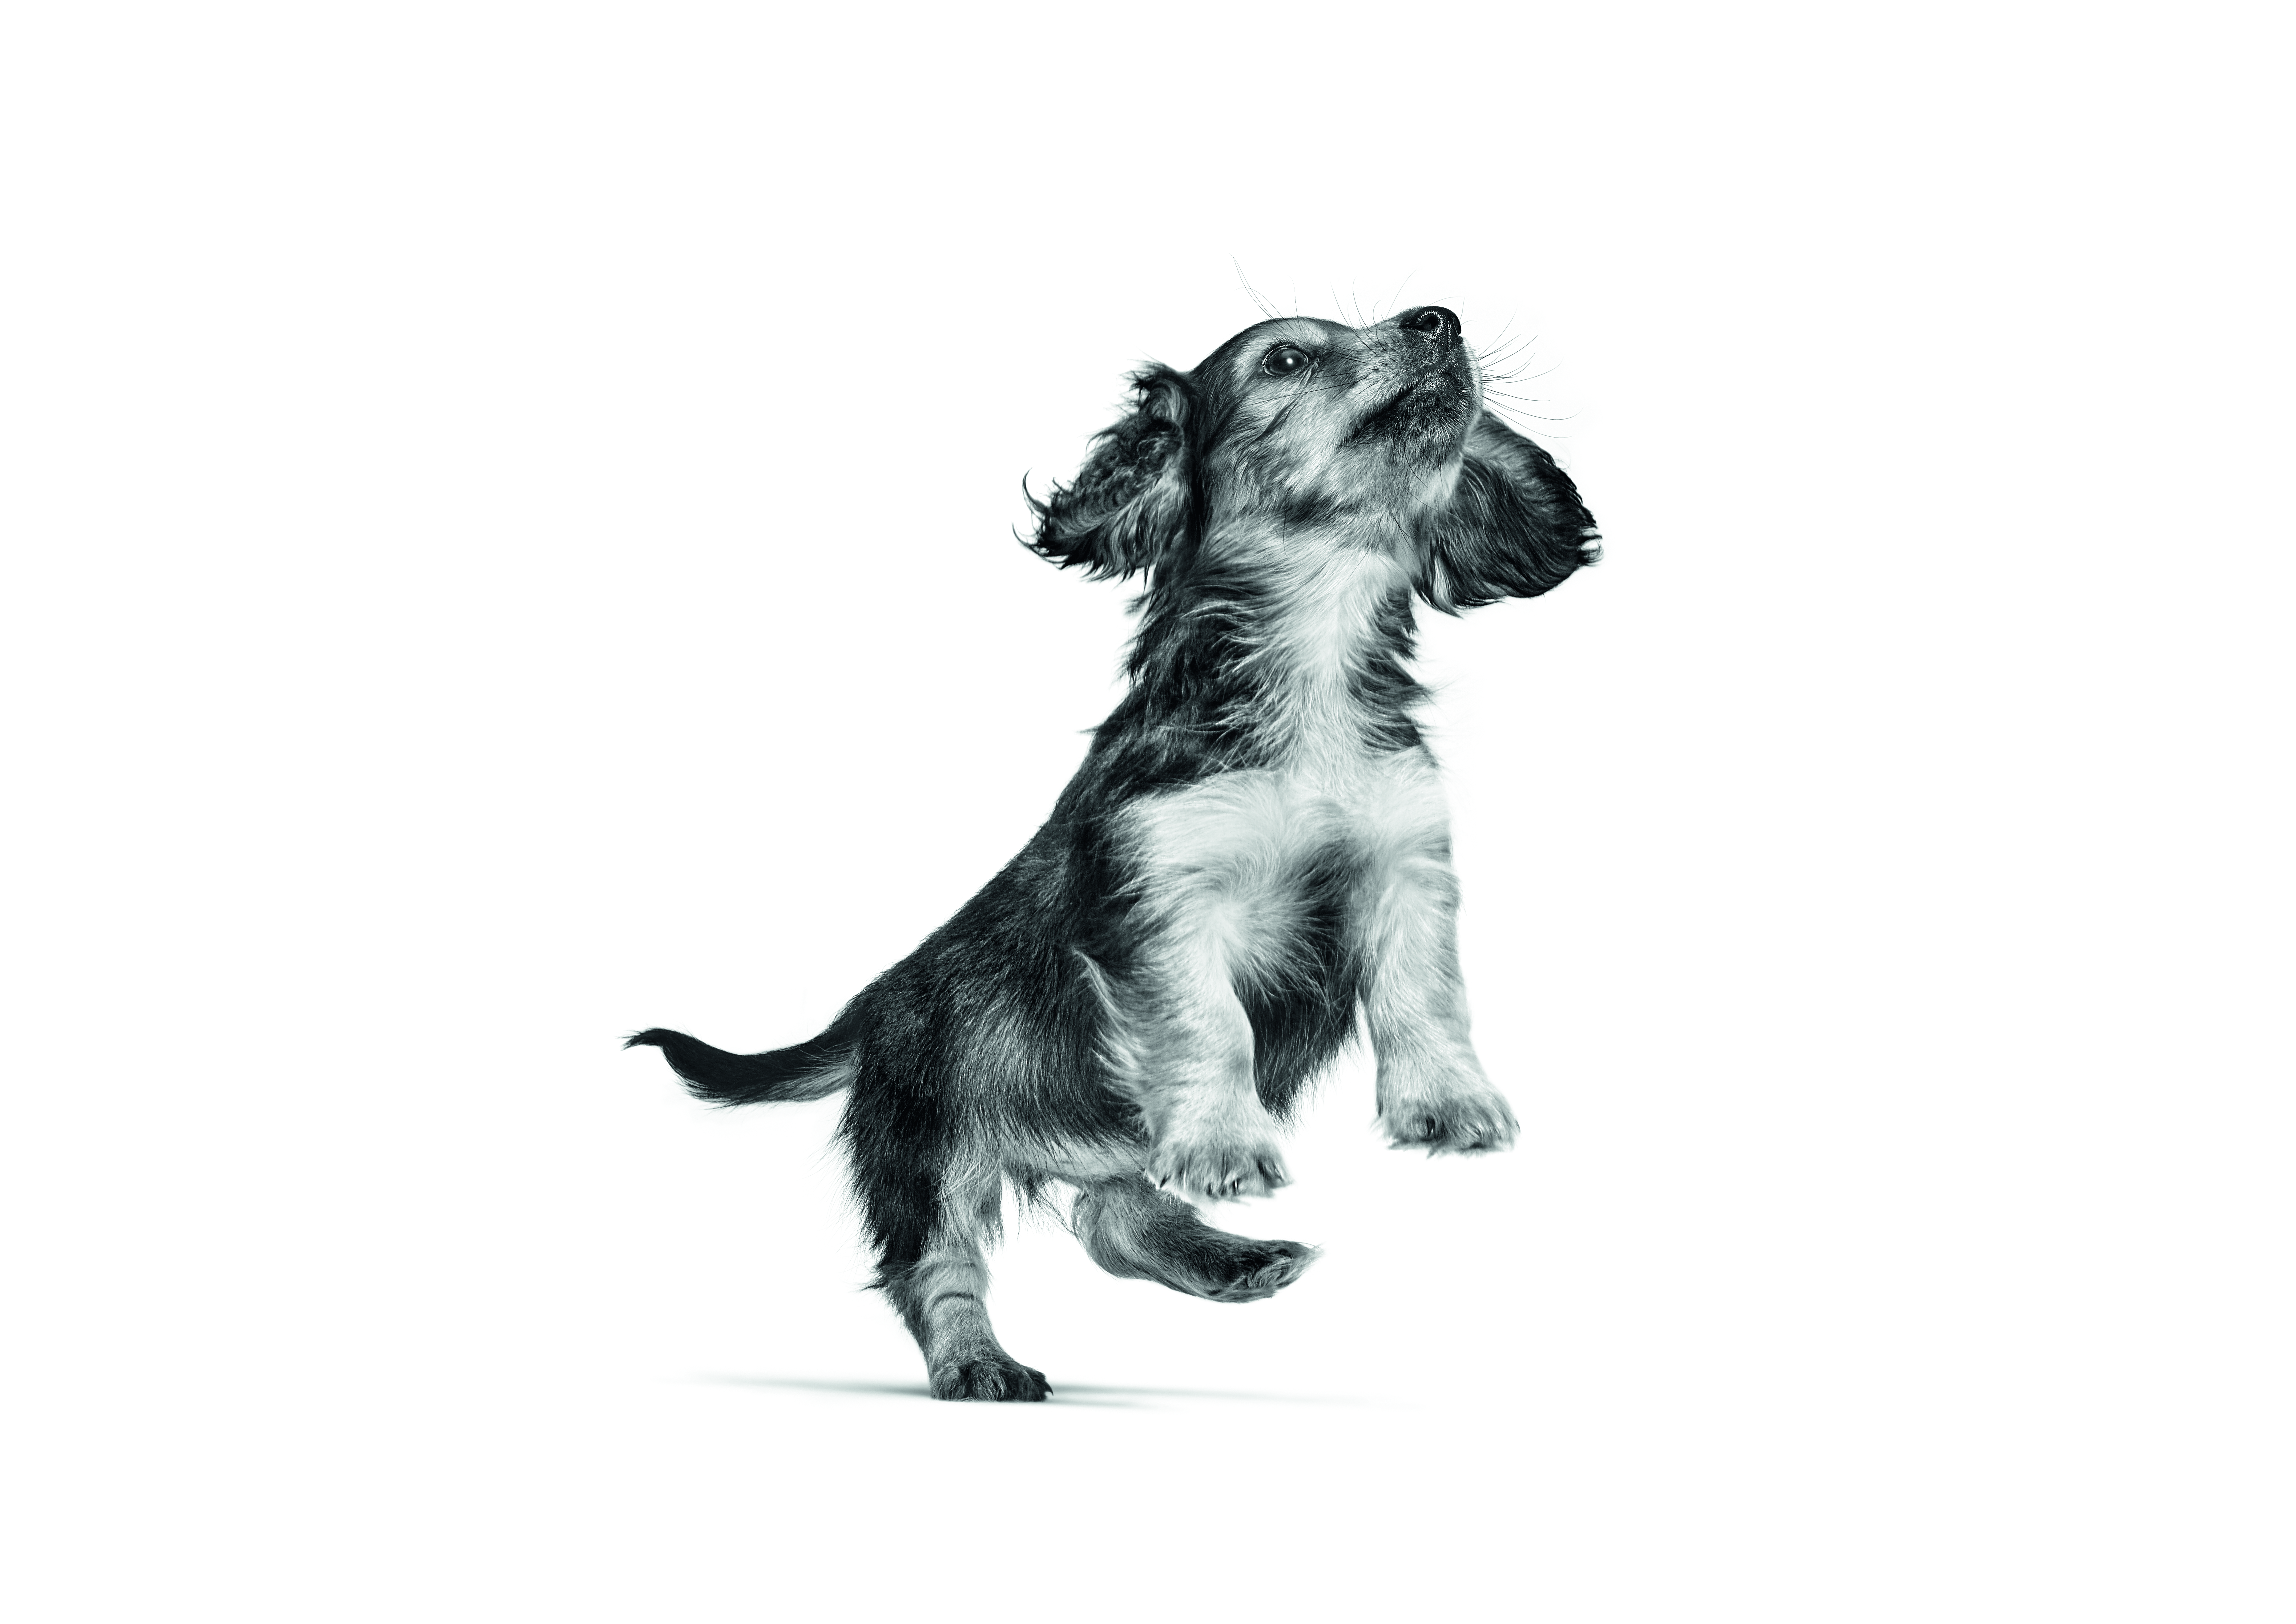 Dachshund cachorro saltando en blanco y negro sobre un fondo blanco.